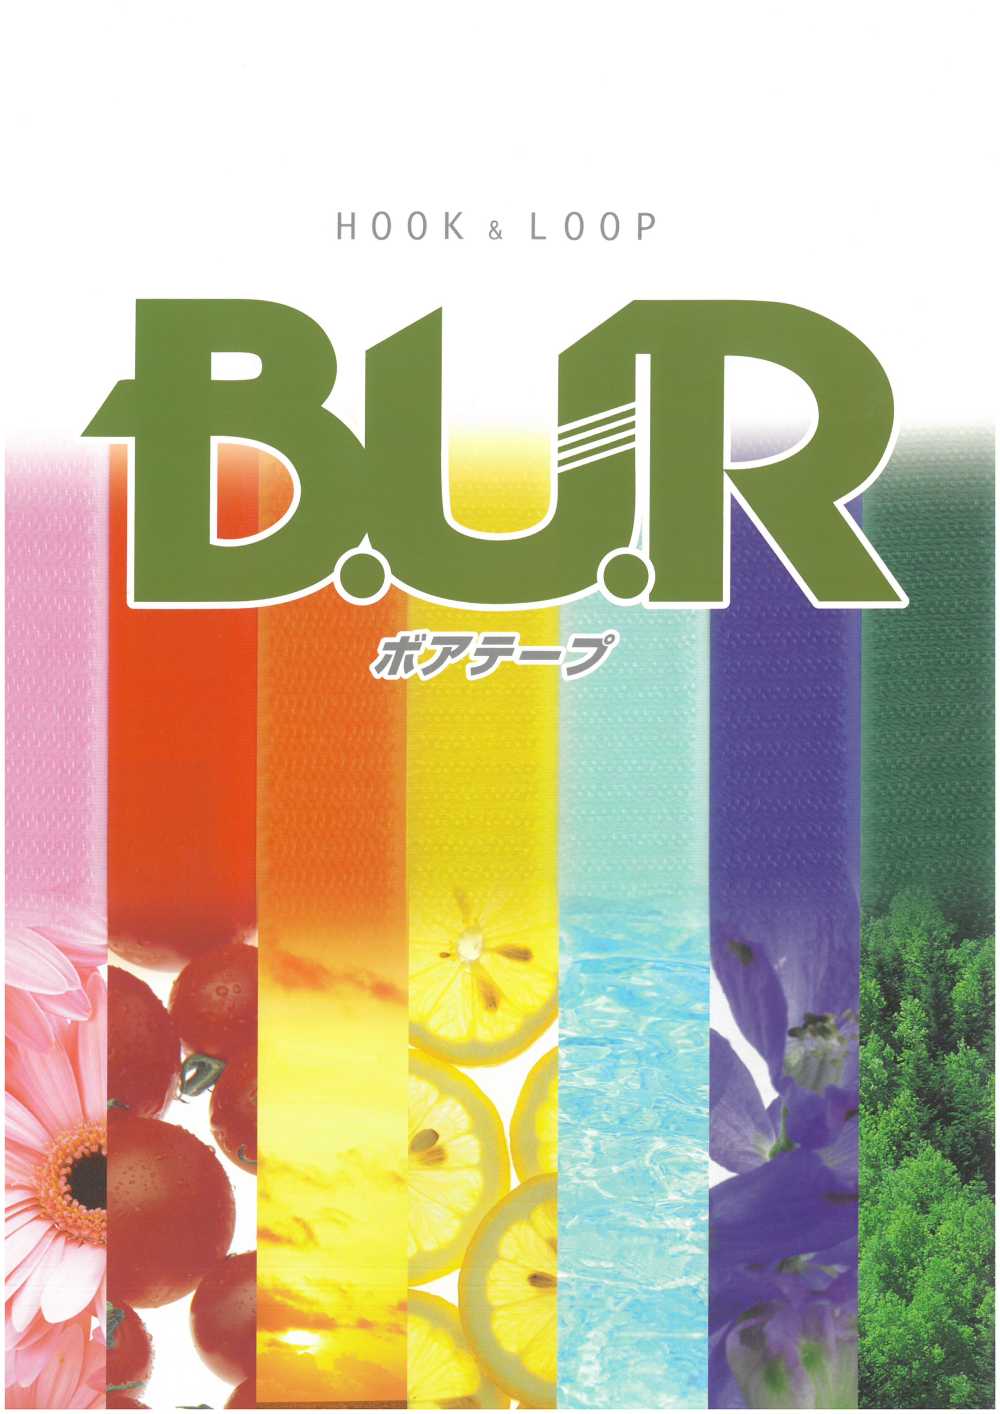 JBL ボアテープ 面ファスナー B面(ループタイプ) ナイロン製 縫製用ノーマルタイプ B.U.R